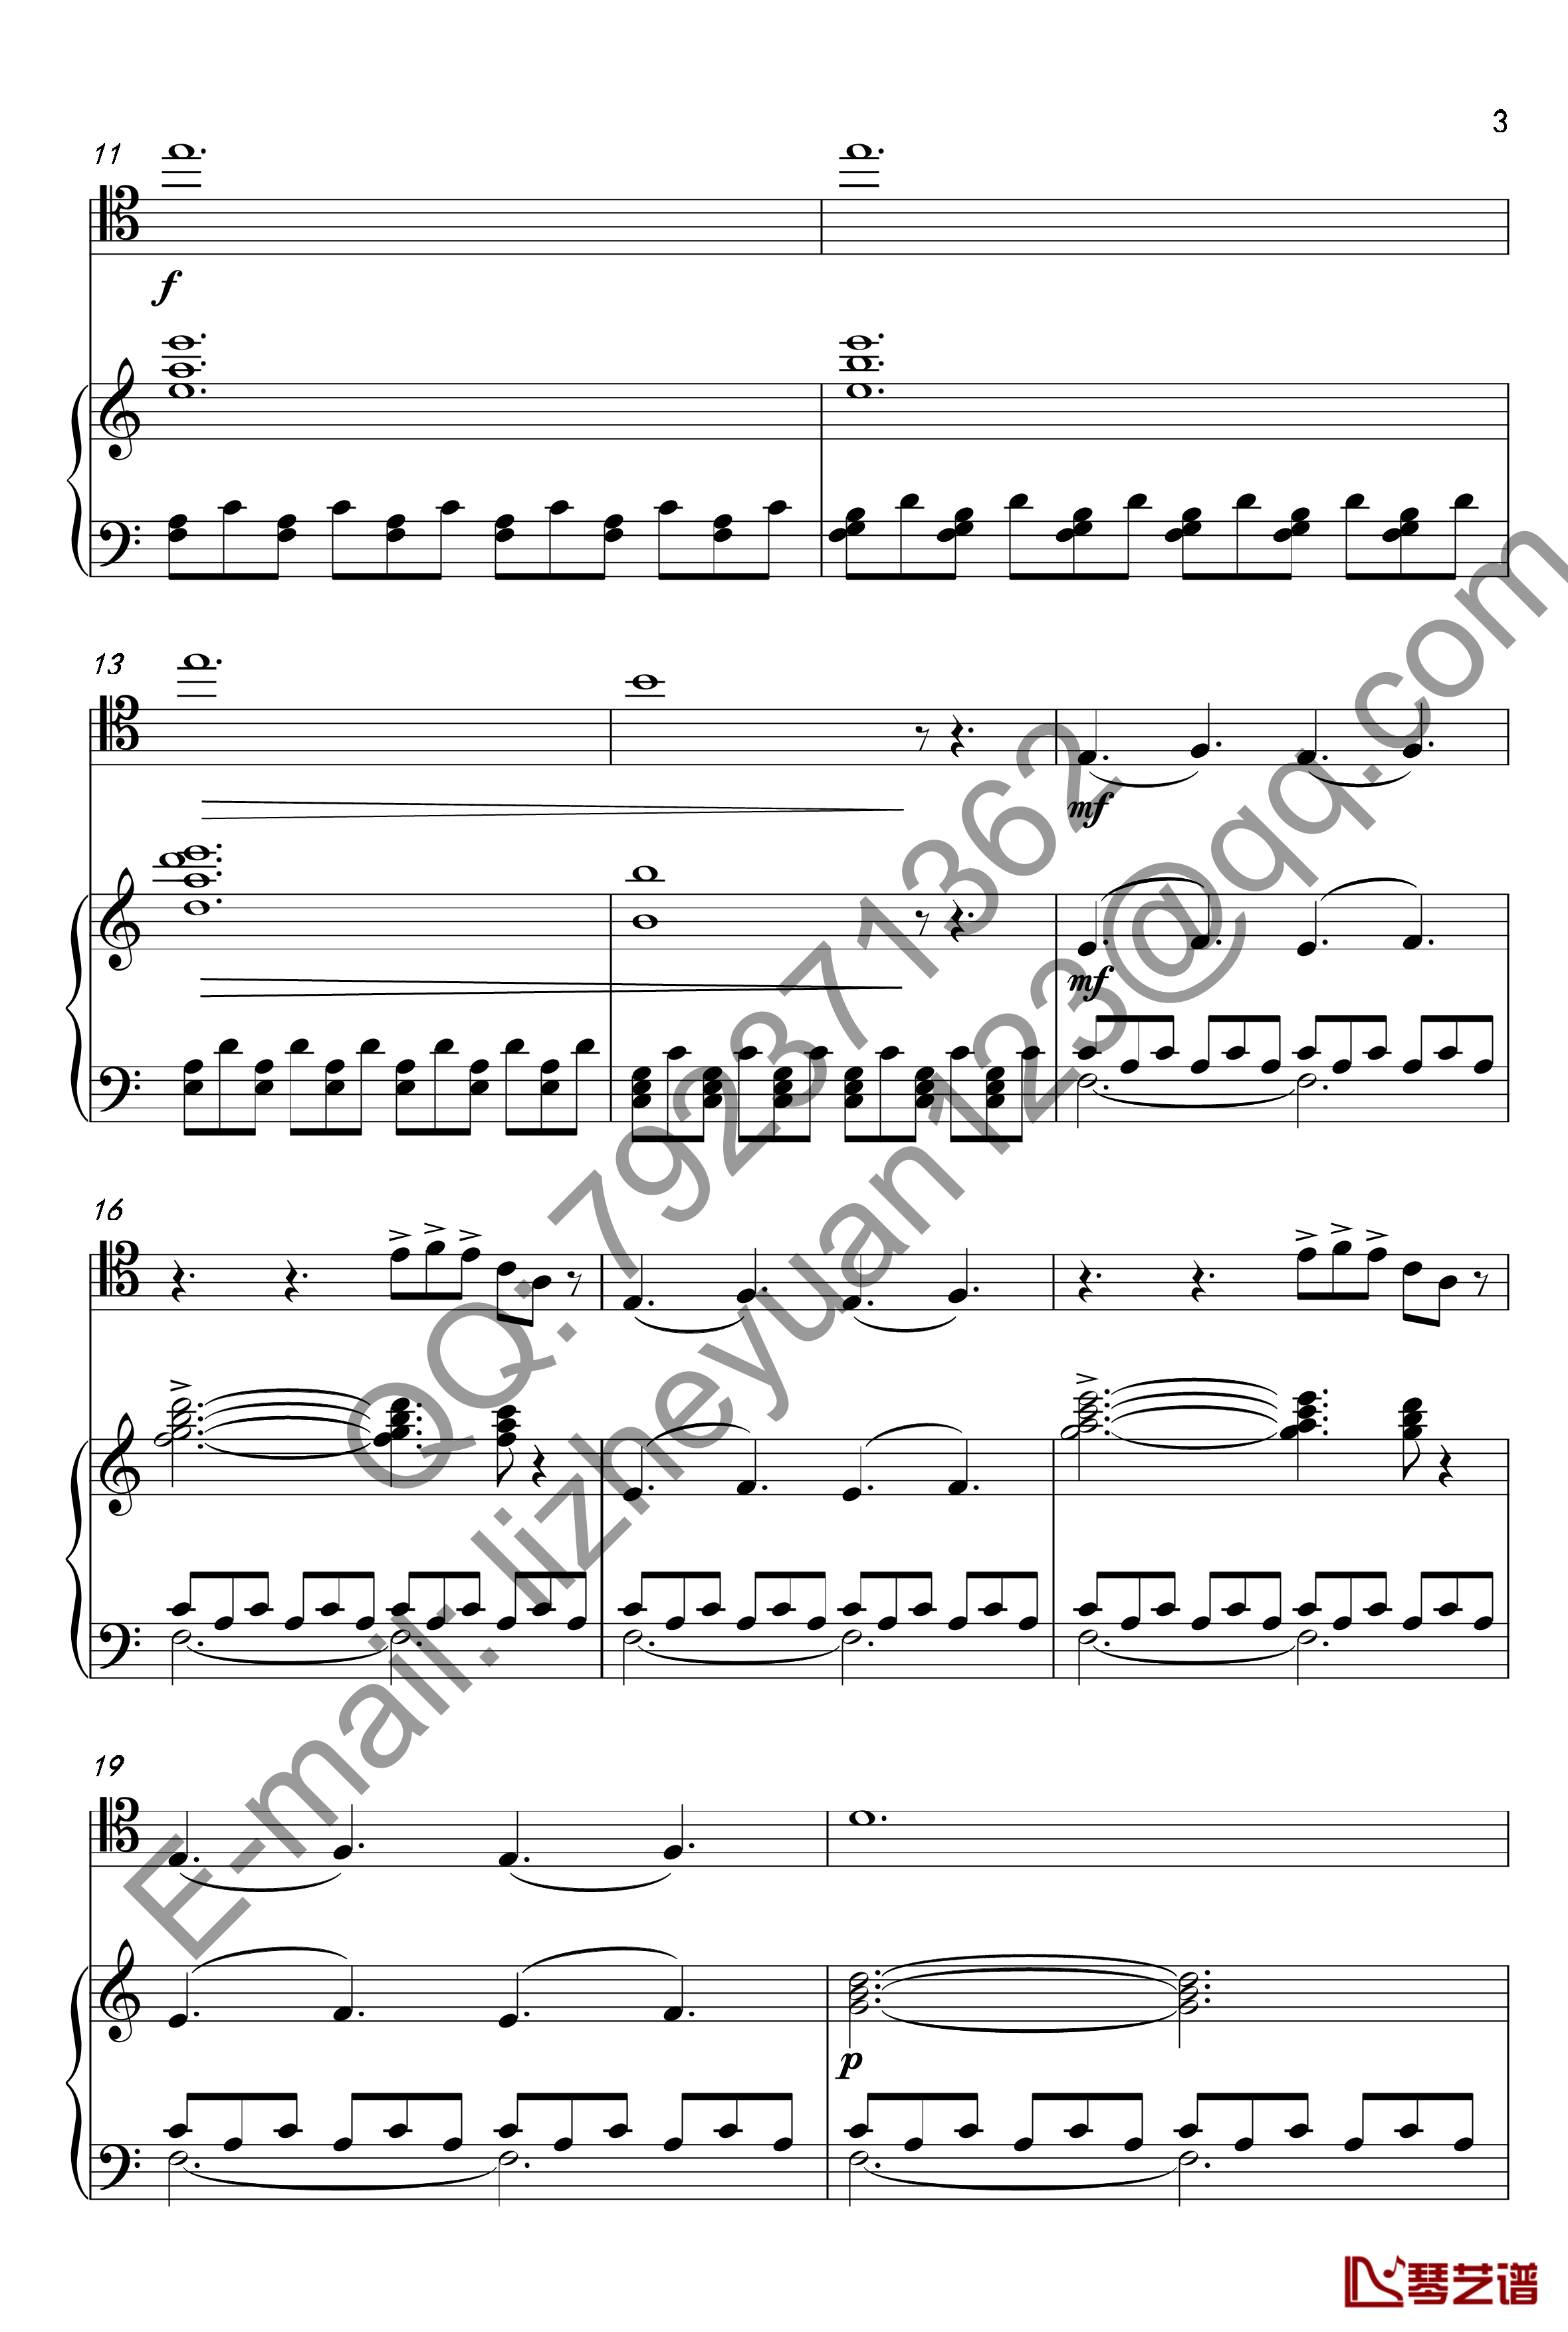 唐顿庄园主题曲钢琴谱-钢琴+大提琴-唐顿庄园